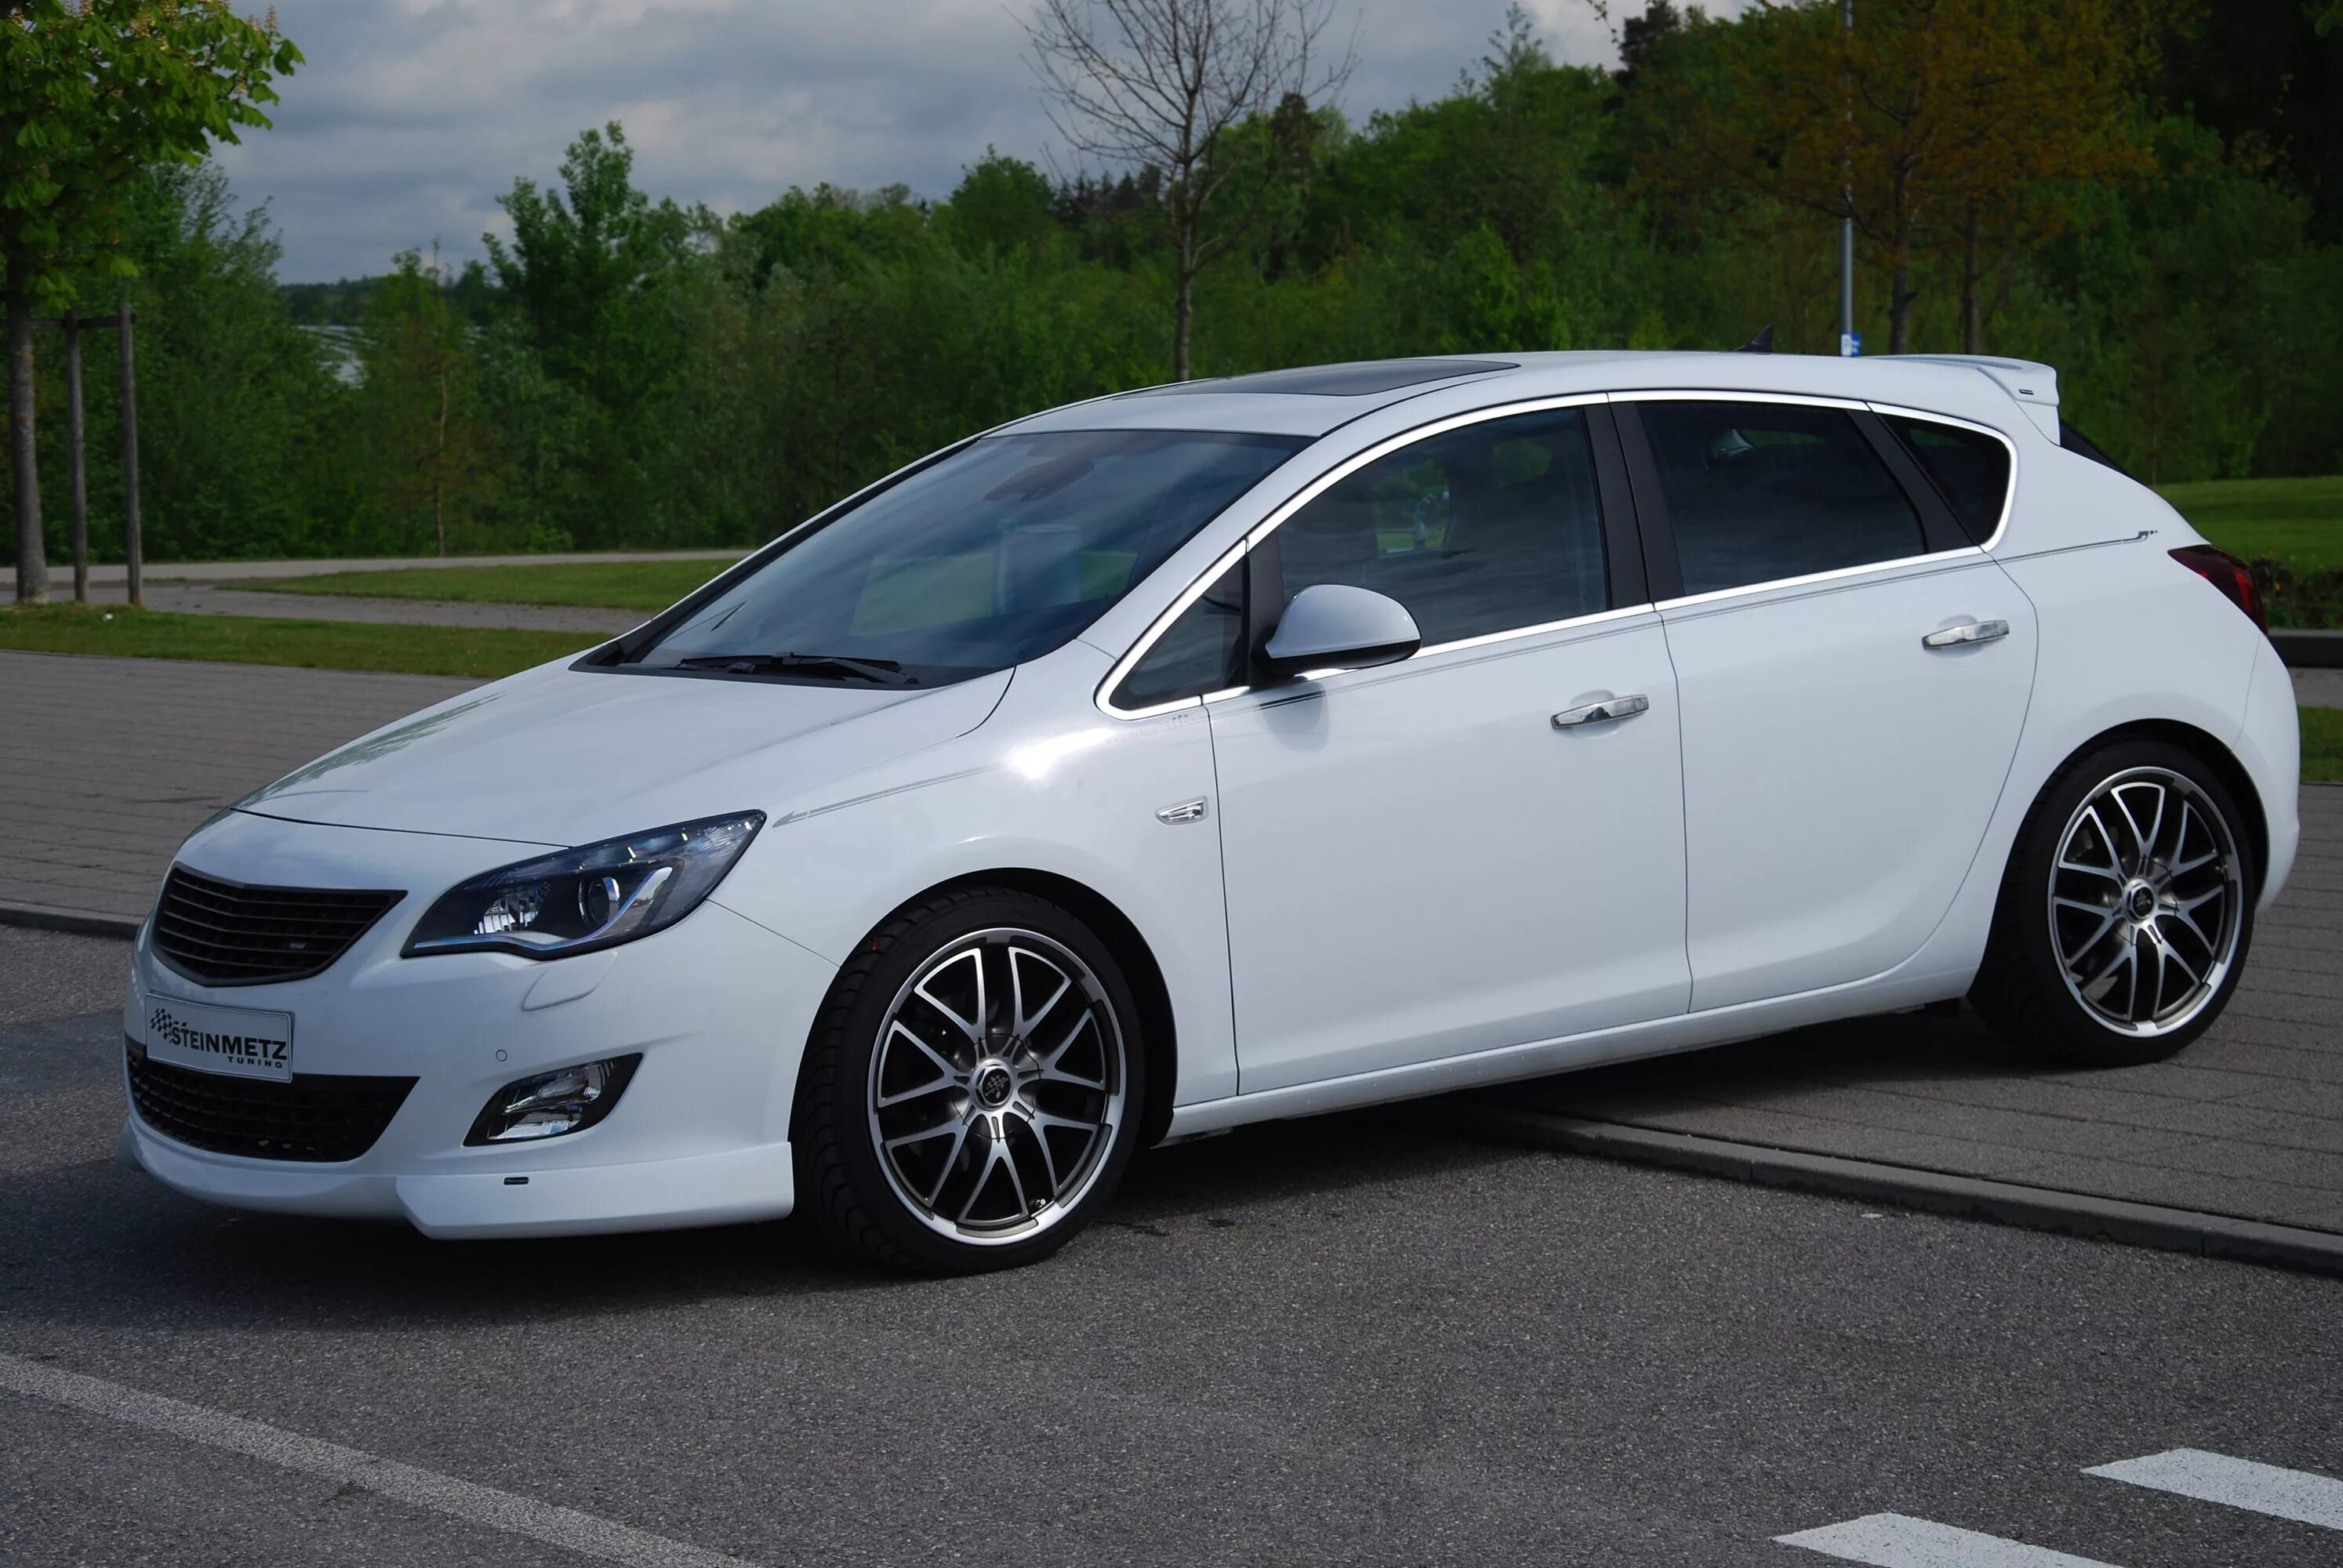 Opel tuning. Opel Astra j Tuning. Opel Astra j 2010 Tuning. Opel Astra j Tuning хэтчбек. Opel Astra 2012 Tuning.